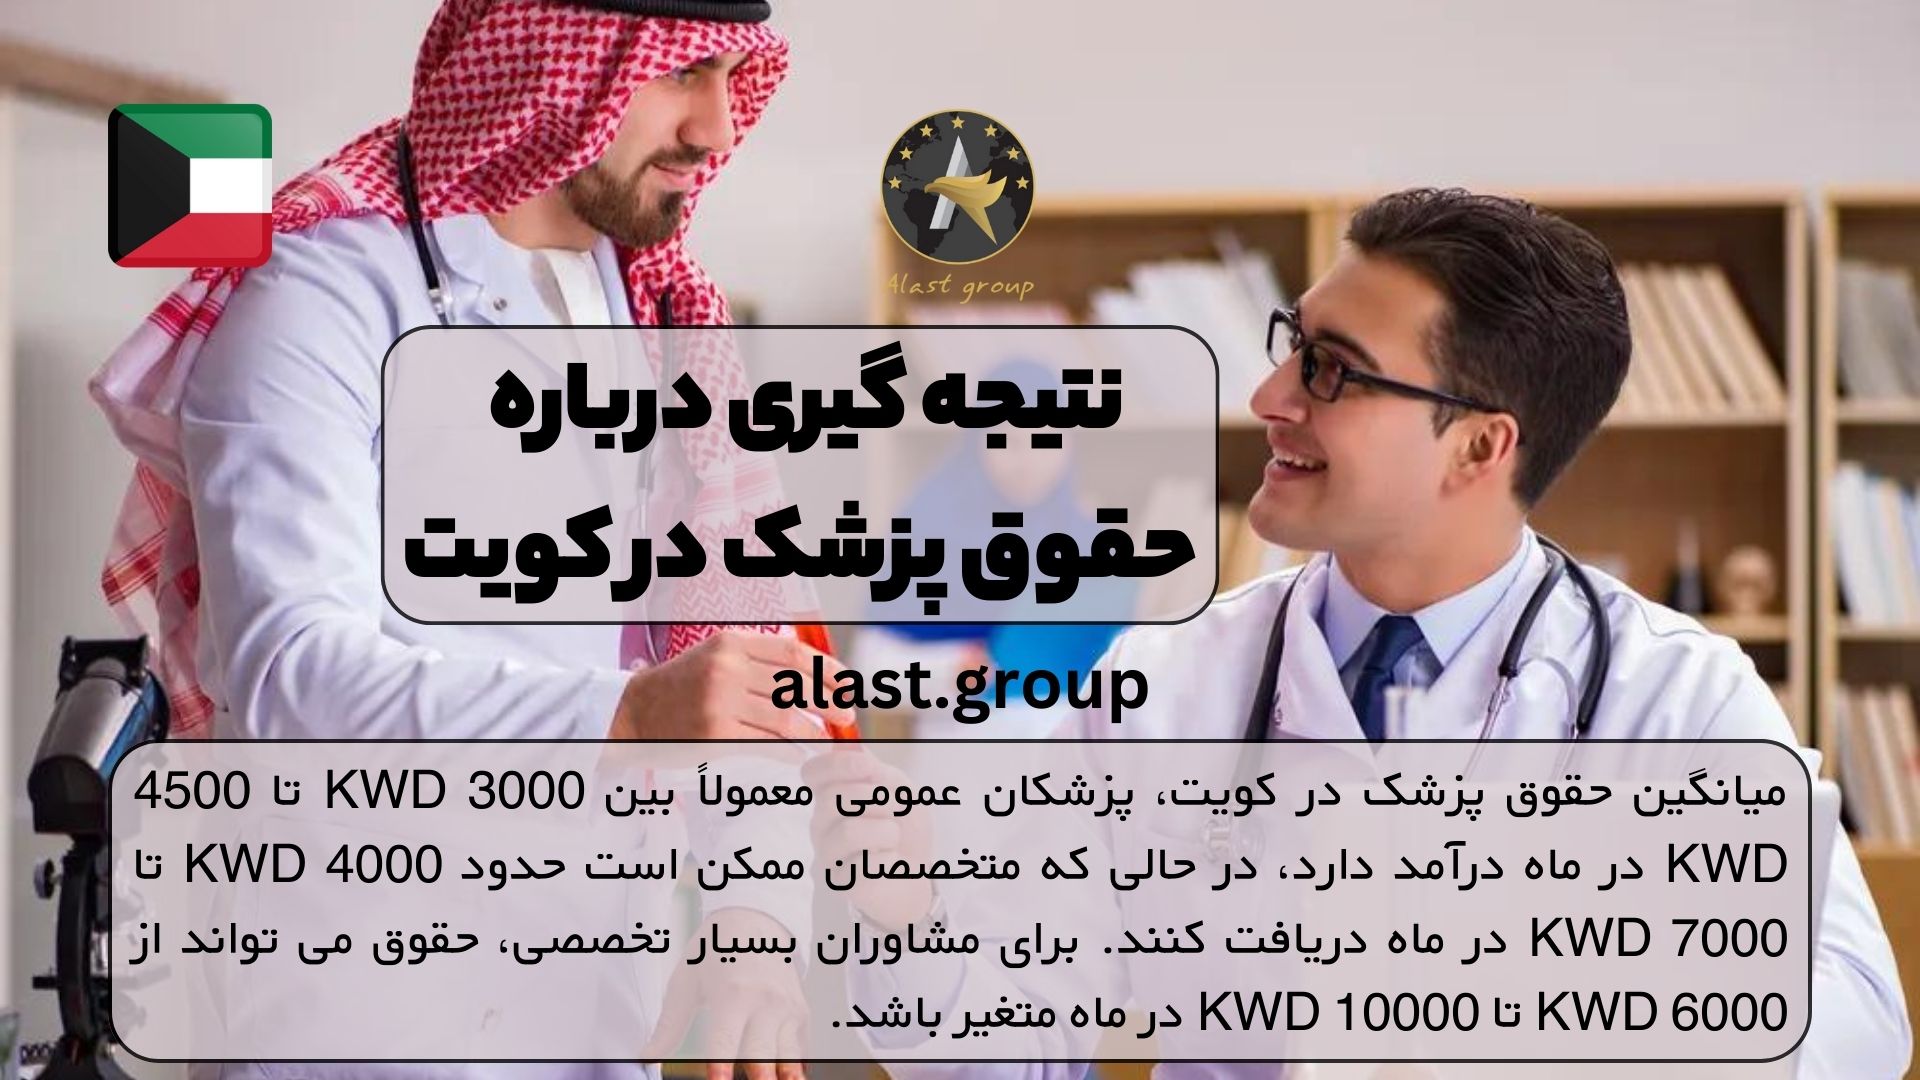 نتیجه گیری درباره حقوق پزشک در کویت